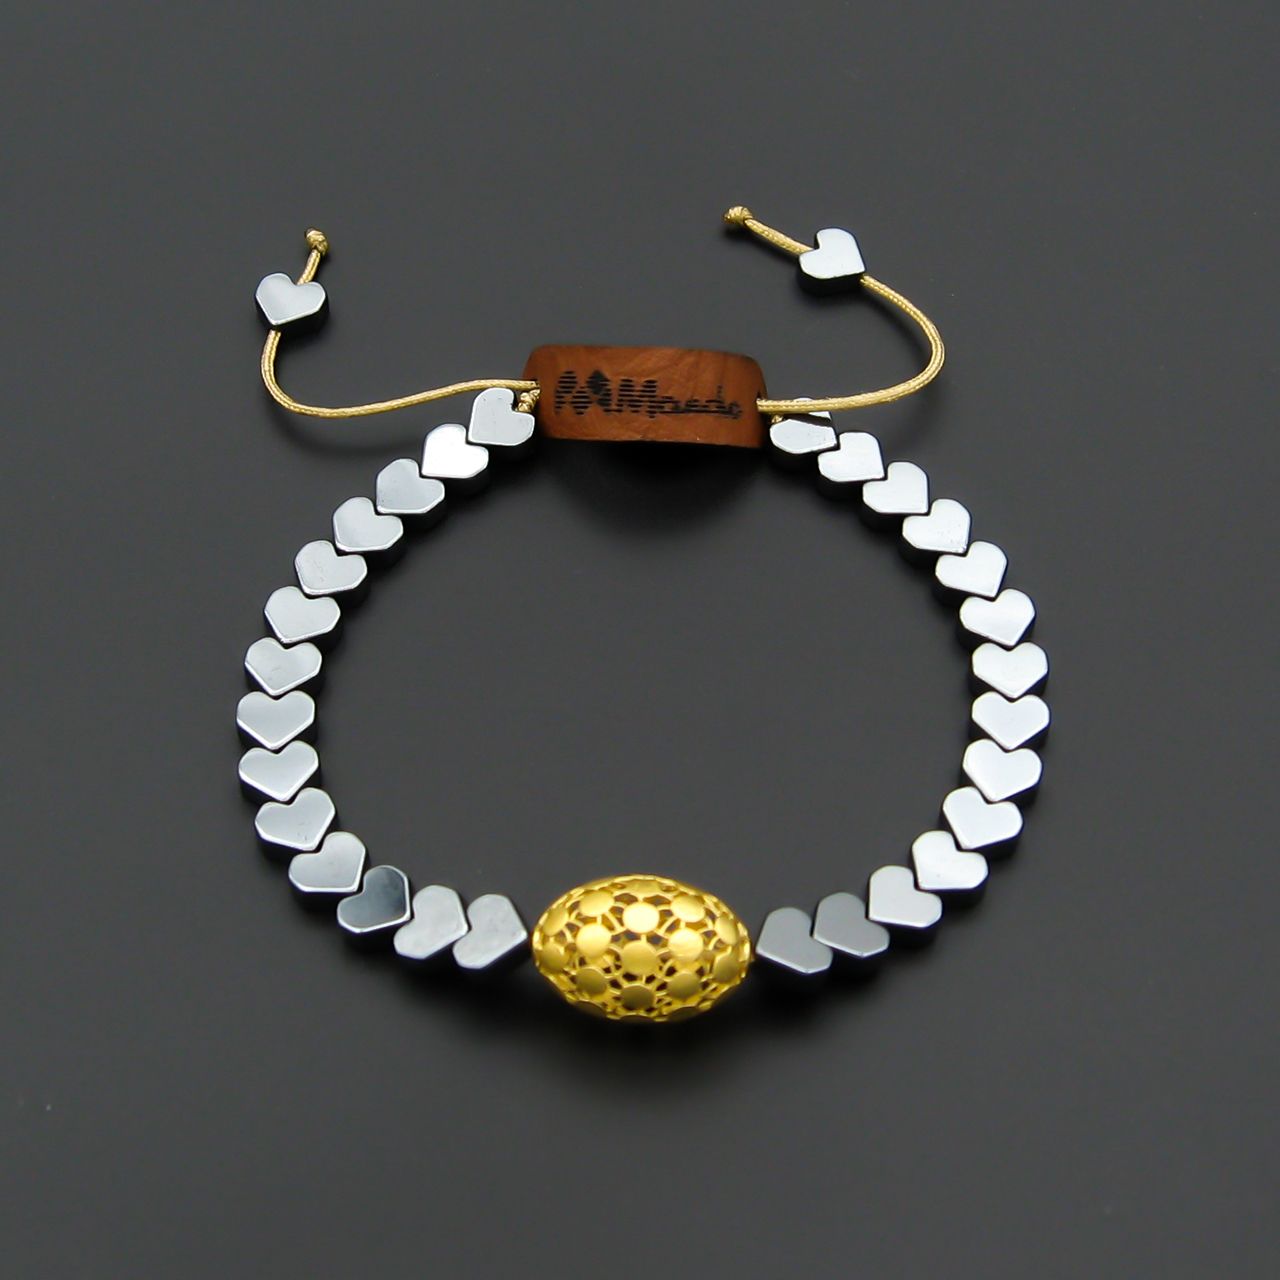 دستبند طلا 18 عیار زنانه مانچو مدل قلب کد bfg215 -  - 4